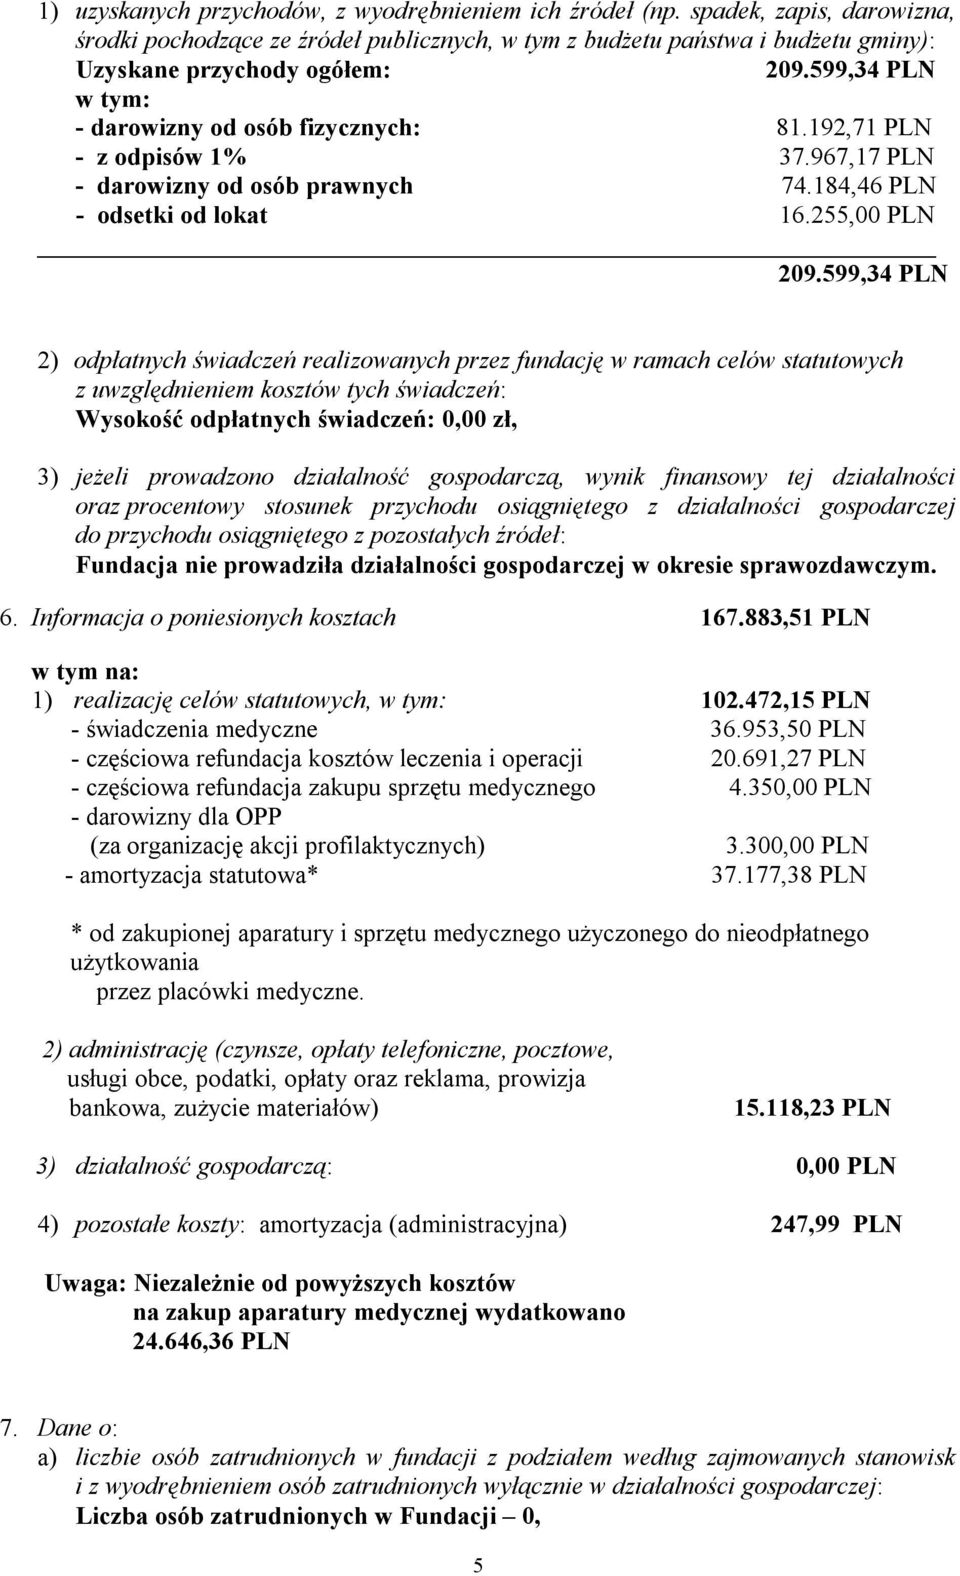 599,34 PLN 2) odpłatnych świadczeń realizowanych przez fundację w ramach celów statutowych z uwzględnieniem kosztów tych świadczeń: Wysokość odpłatnych świadczeń: 0,00 zł, 3) jeżeli prowadzono